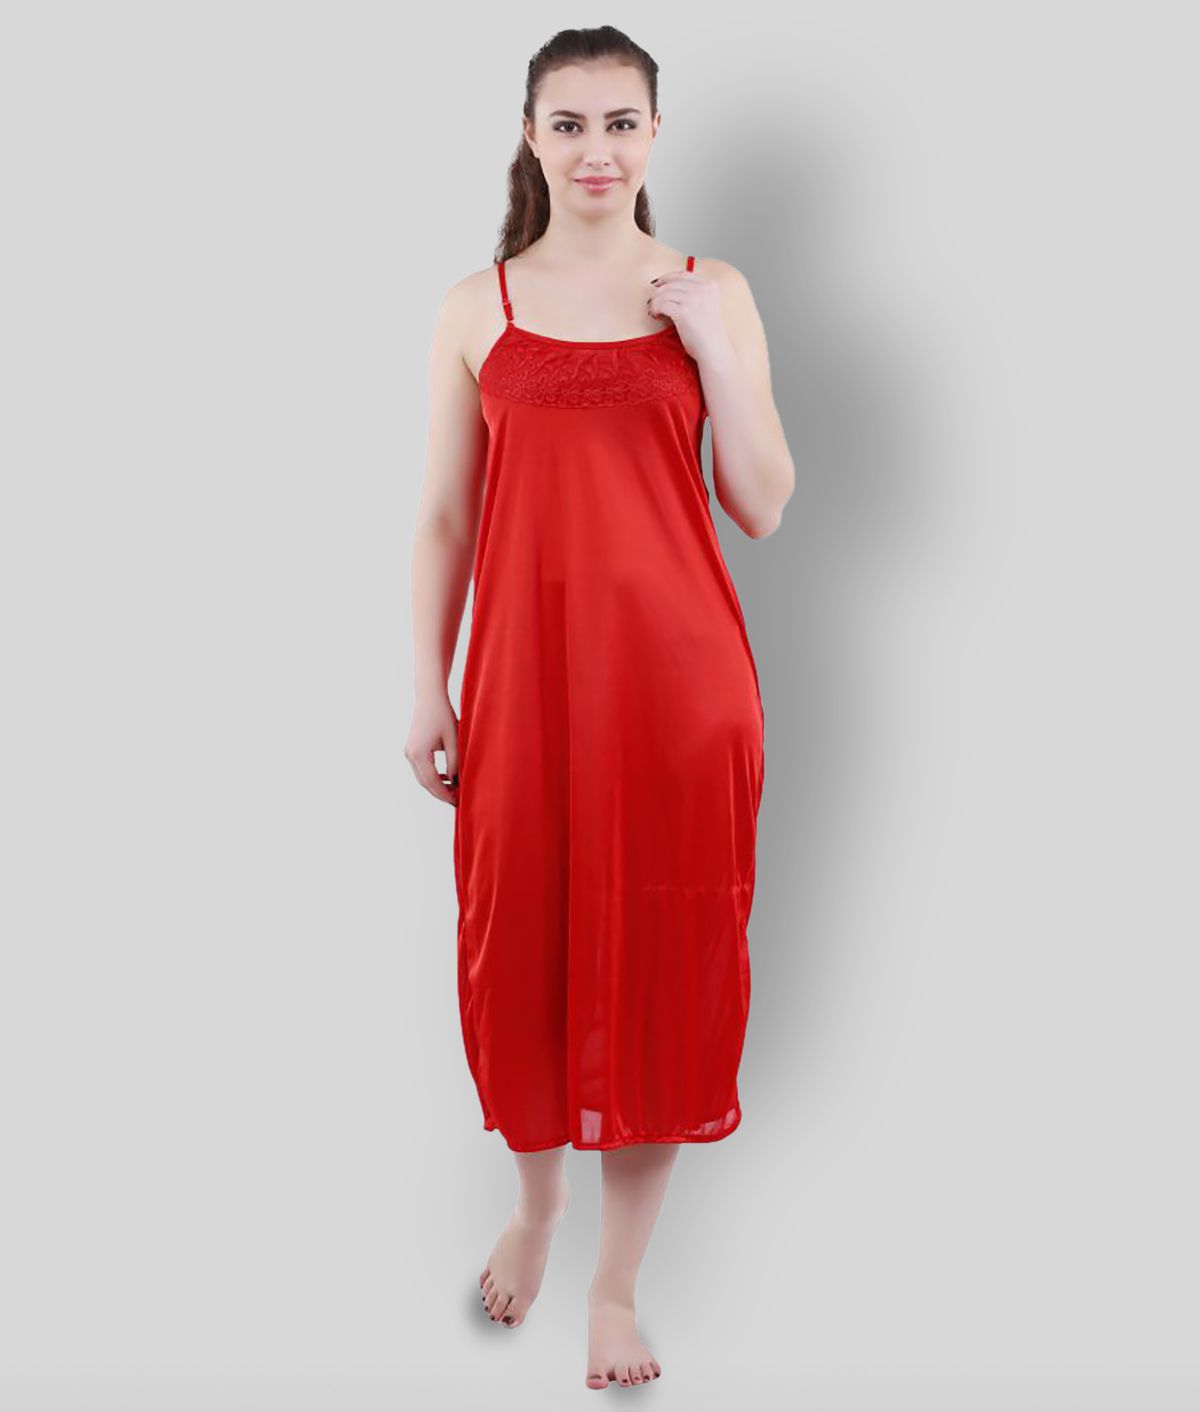     			Romaisa - Red Satin Women's Nightwear Nighty & Night Gowns ( Pack of 1 )